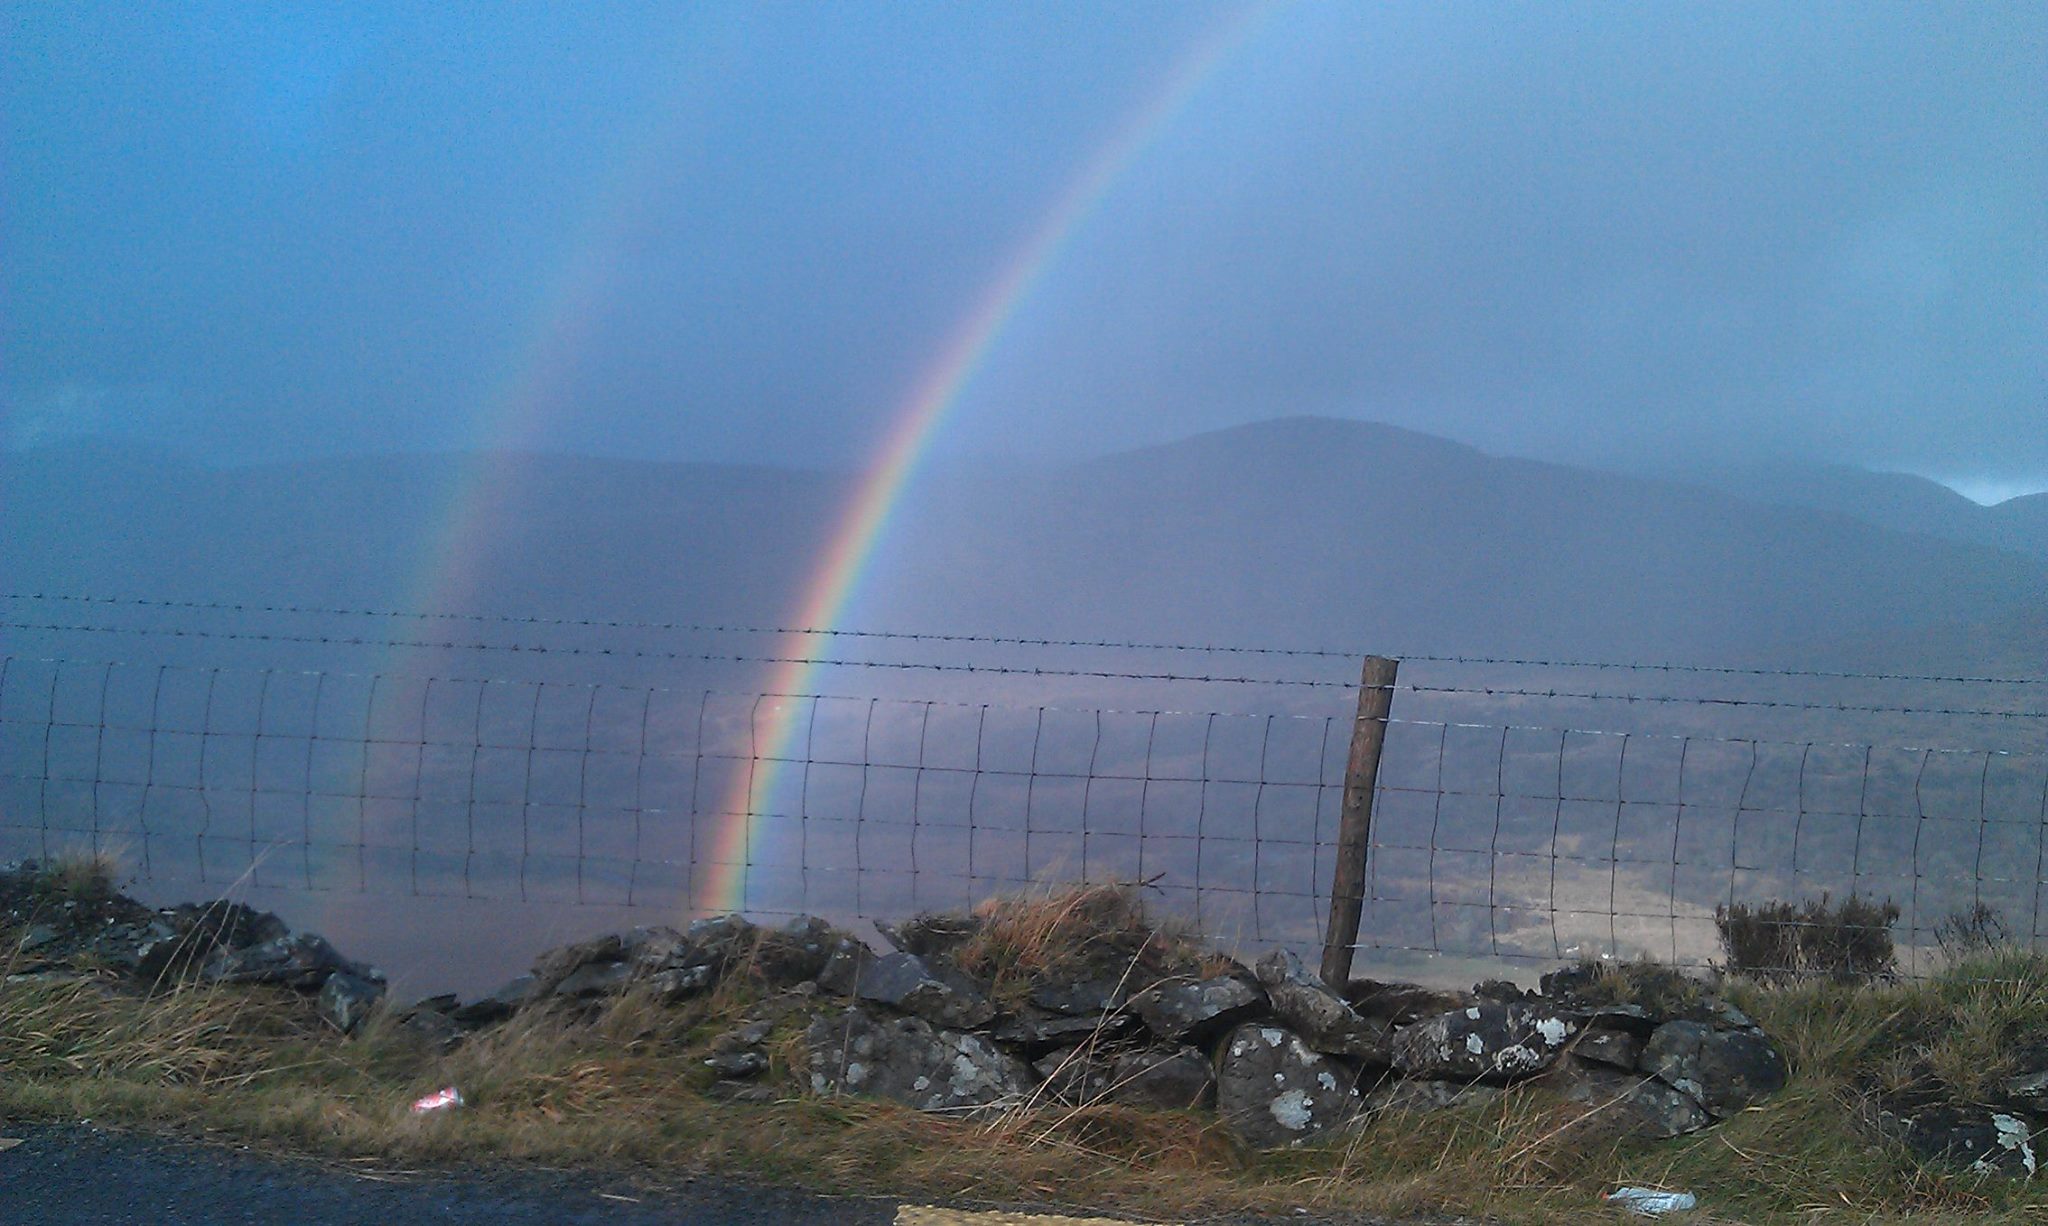 Double rainbow, Irish style!